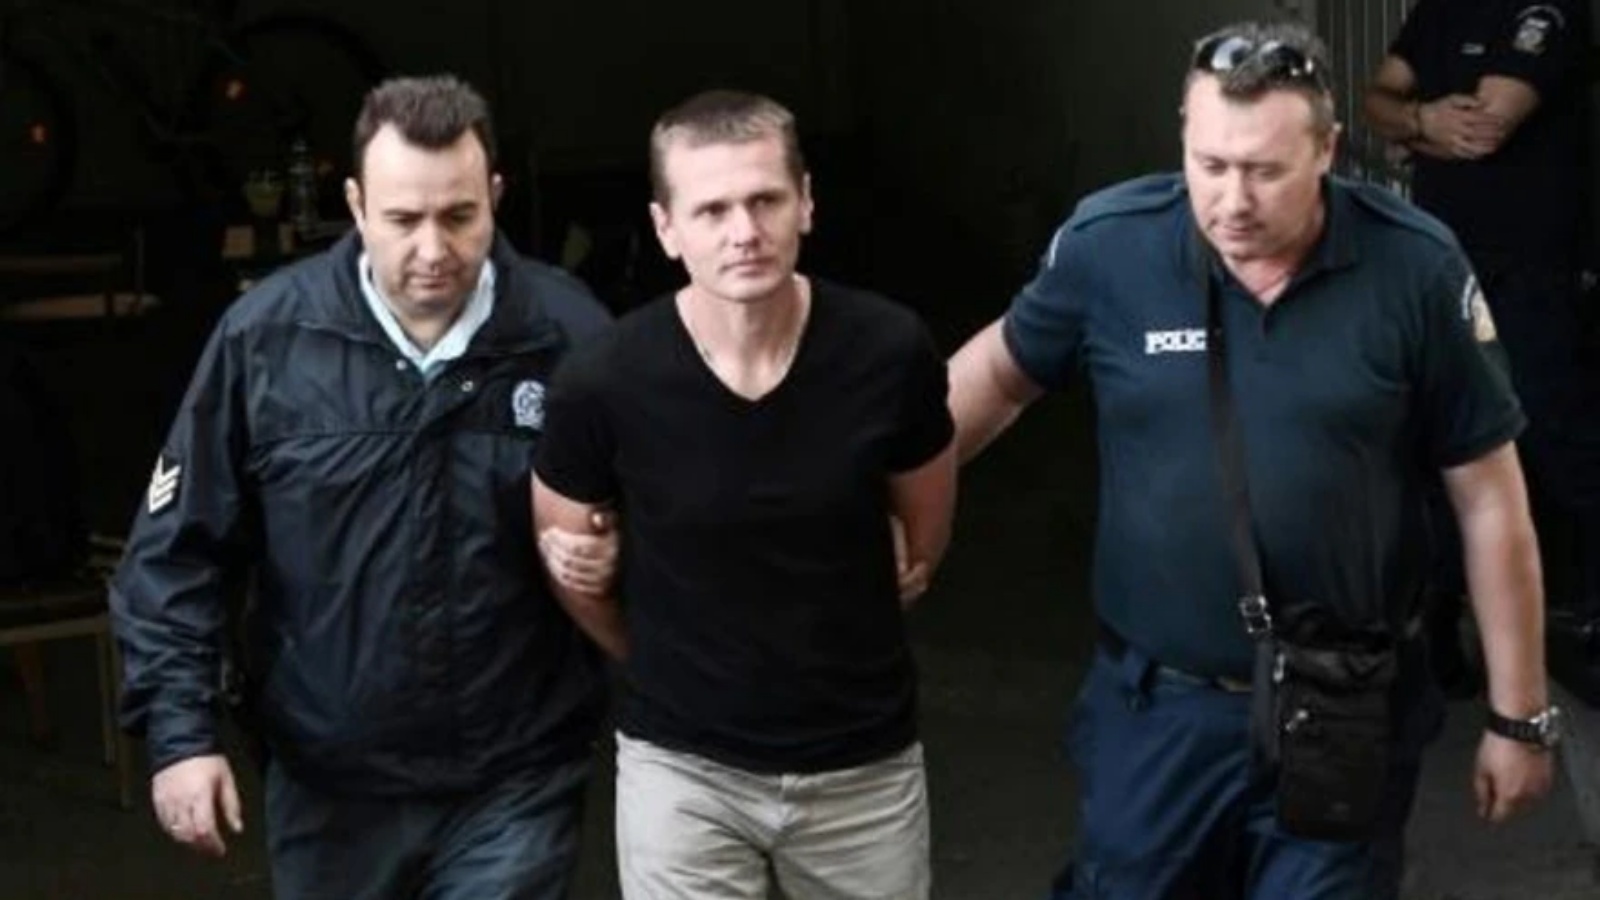 صورة التُقطت في 4 أكتوبر 2017 تُظهر الخبير الروسي بالعملات المشفّرة ألكسندر فينيك برفقة عنصريْن من الشرطة لدى وصوله إلى محكمة في سالونيكي في اليونان